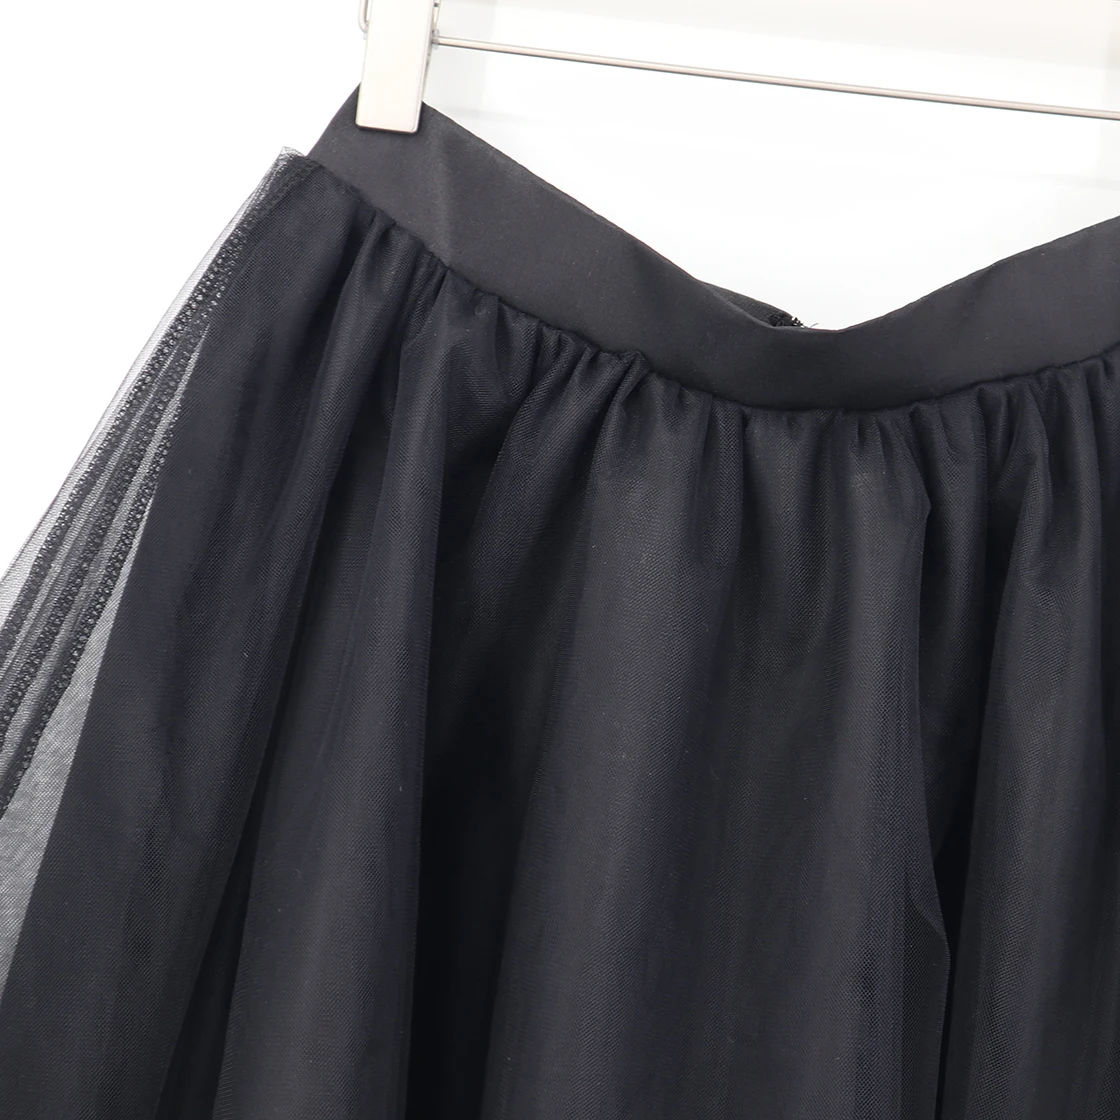 Женская летняя Тюлевая юбка женская черная сетчатая плиссированная Мини-Юбка Femme Faldas Rokken юбка из тюля на скрытой молнии s